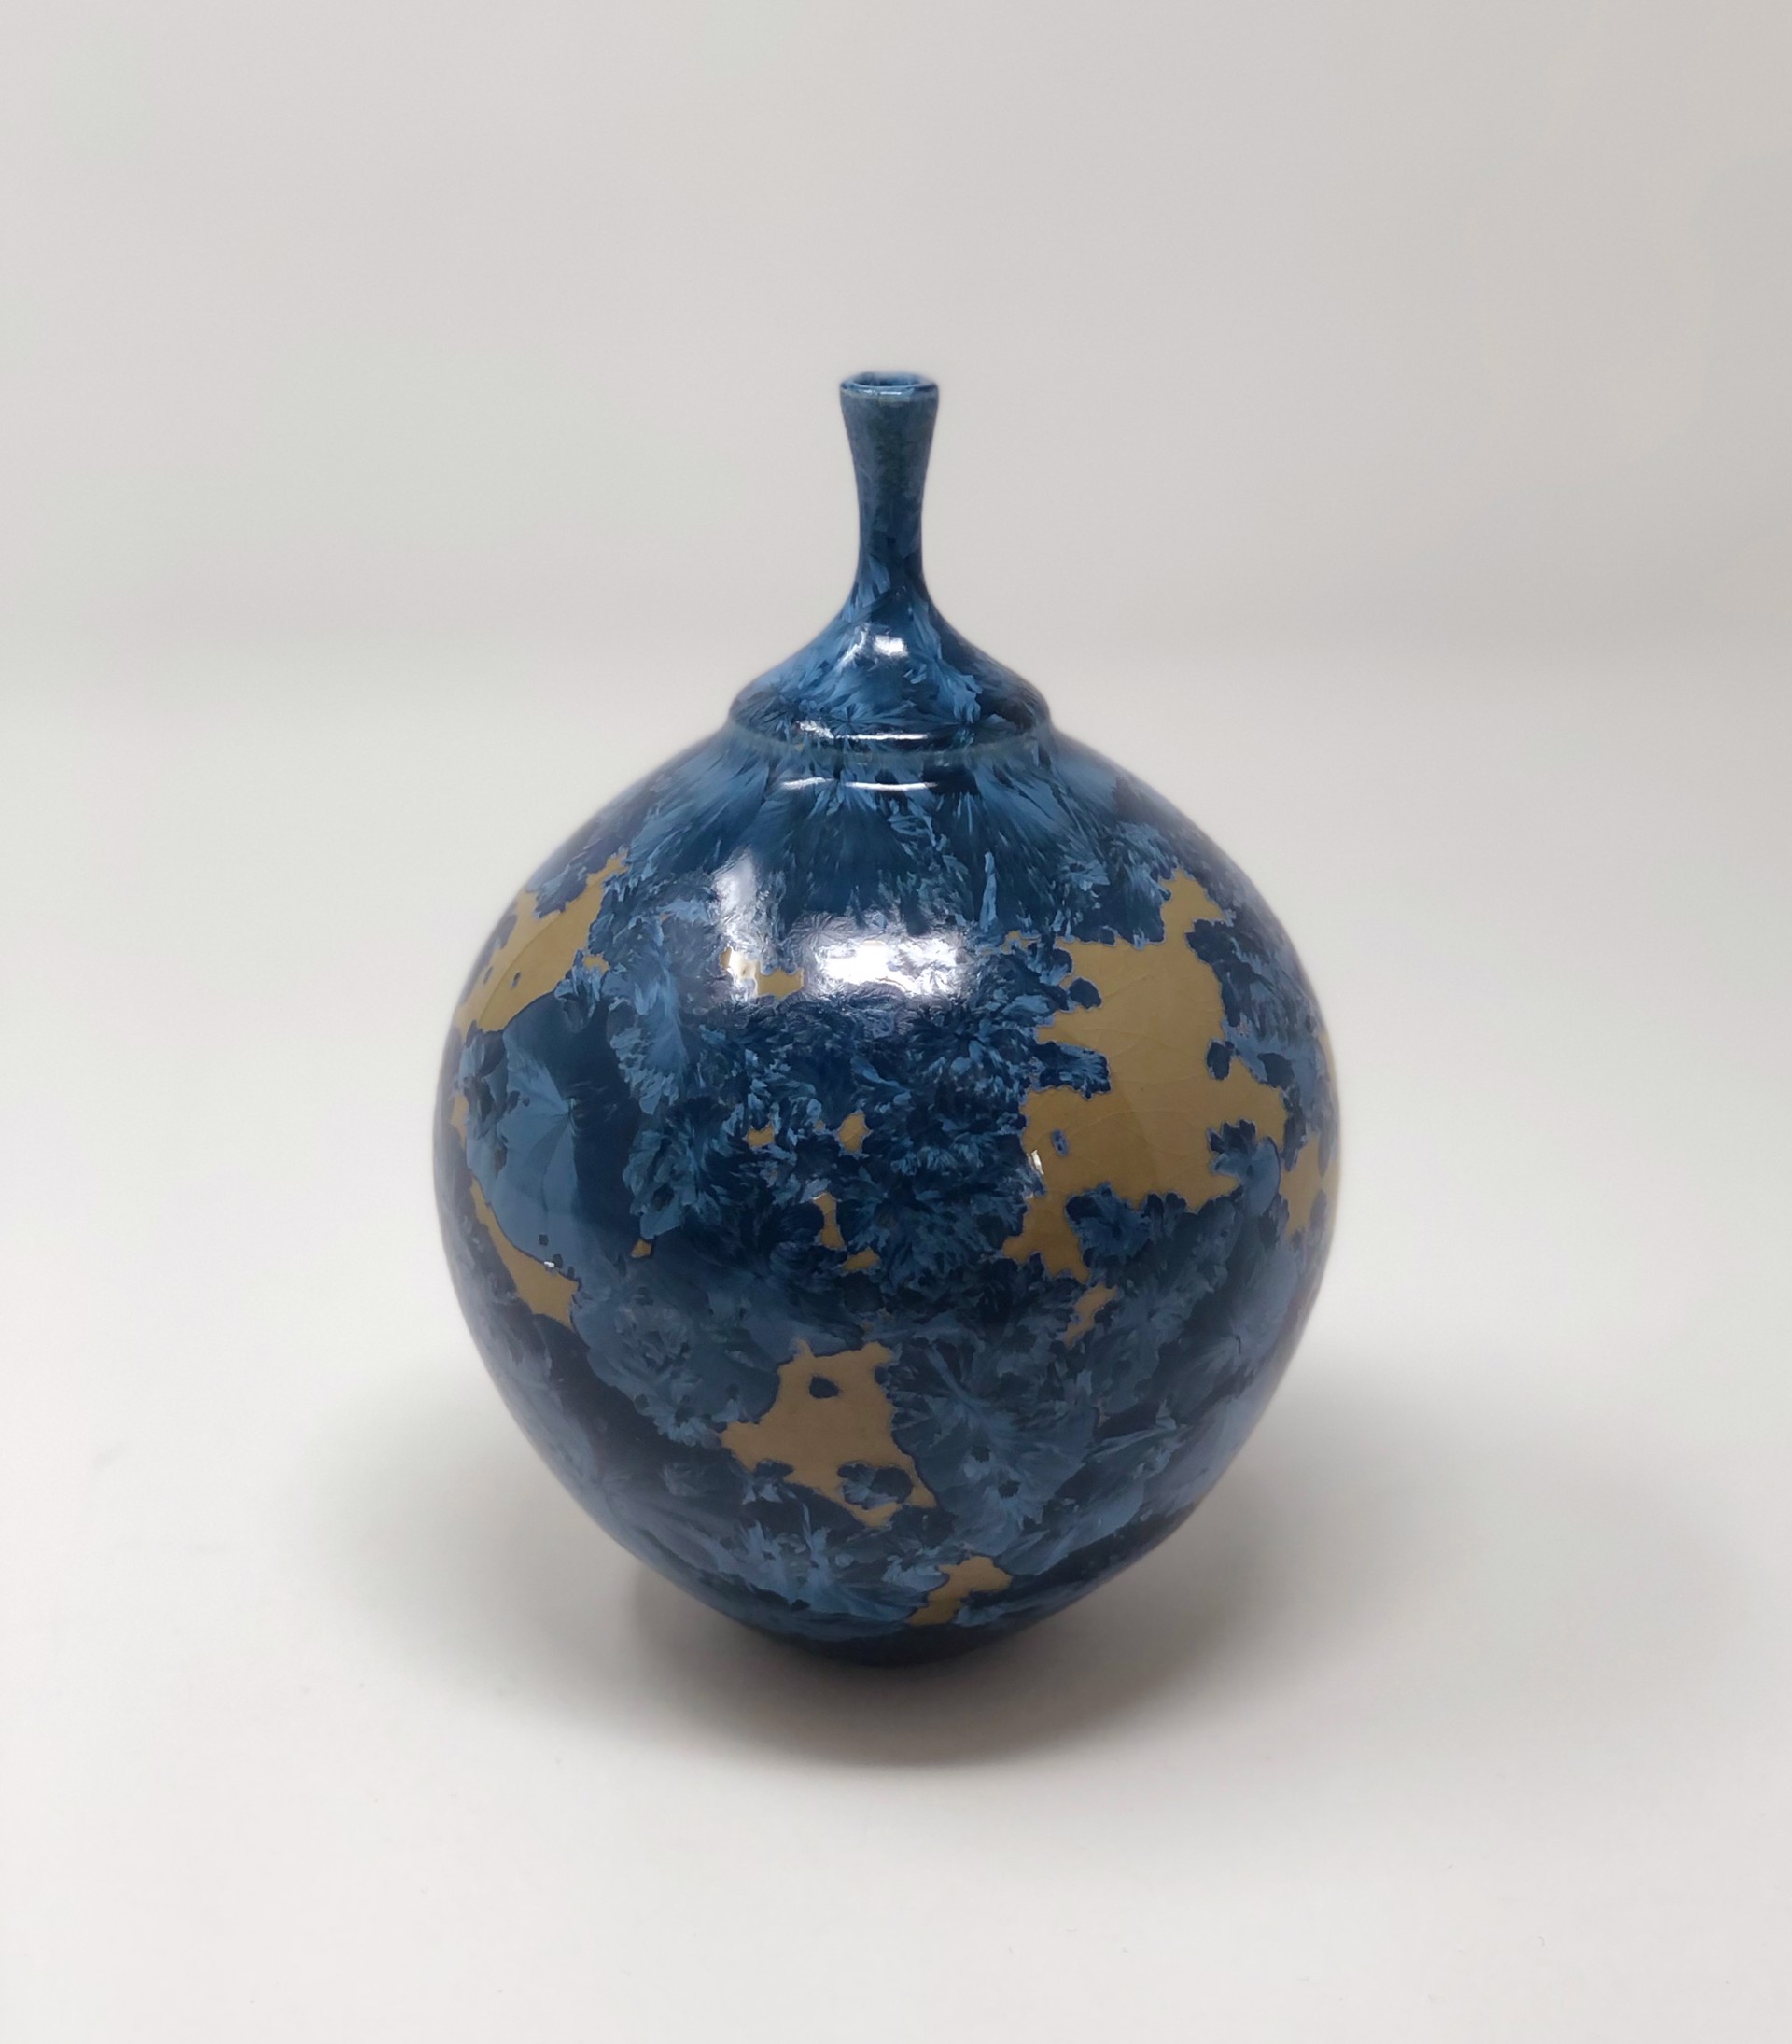 Midnight Blue Vase IV by Jim Keffer